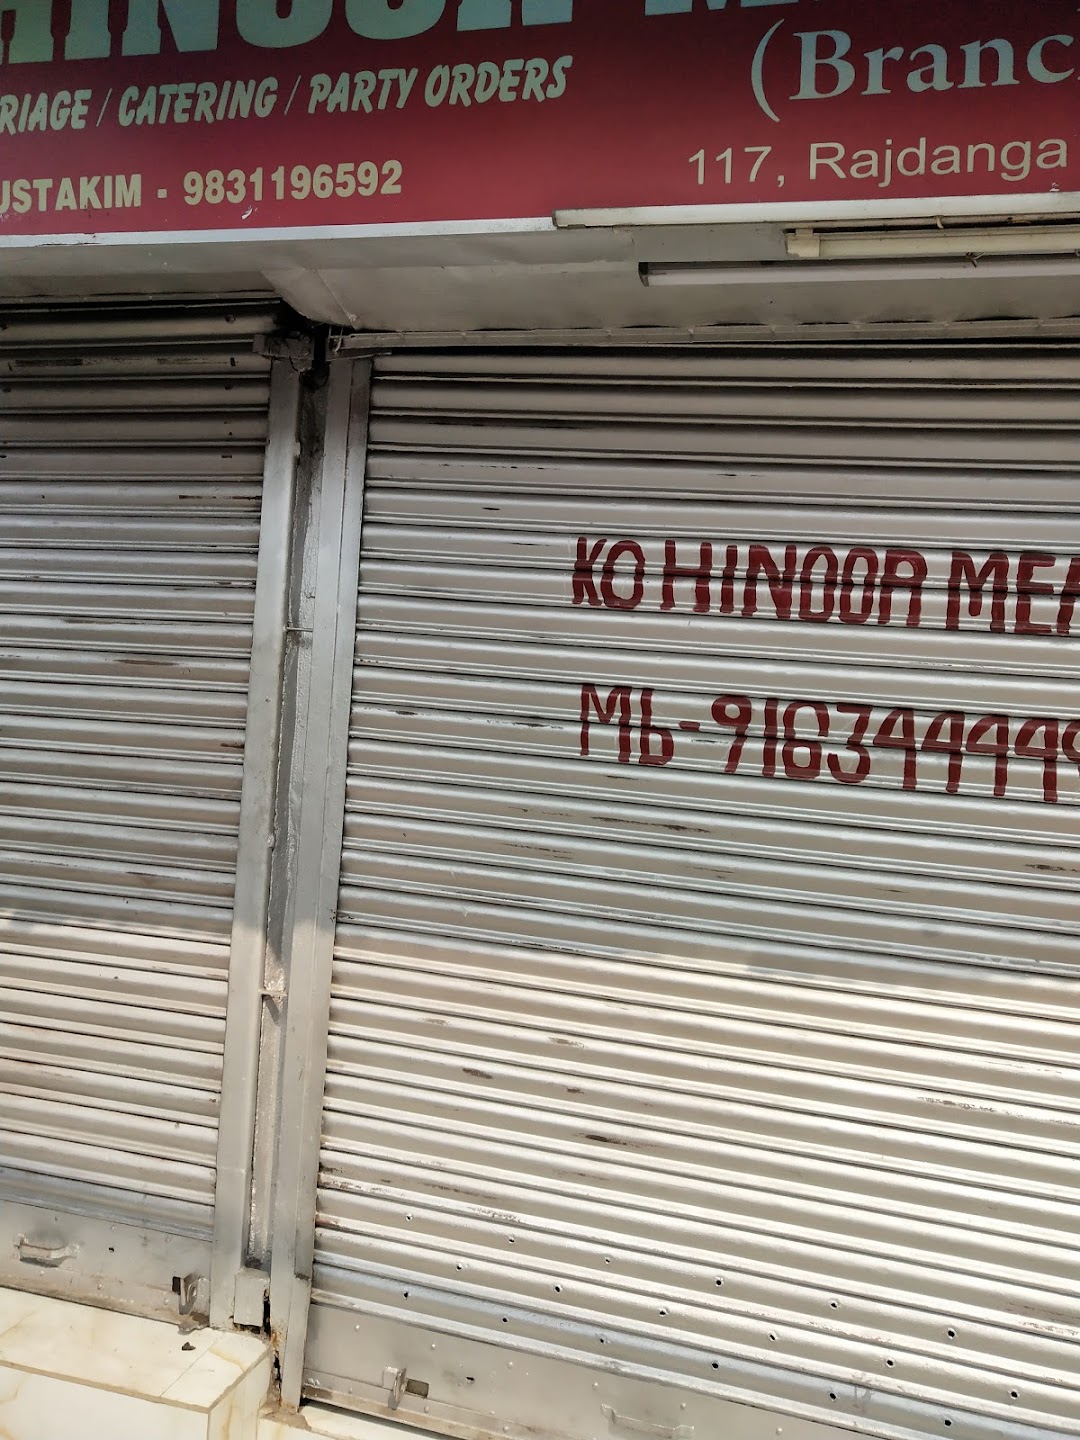 kohinoor meat shop